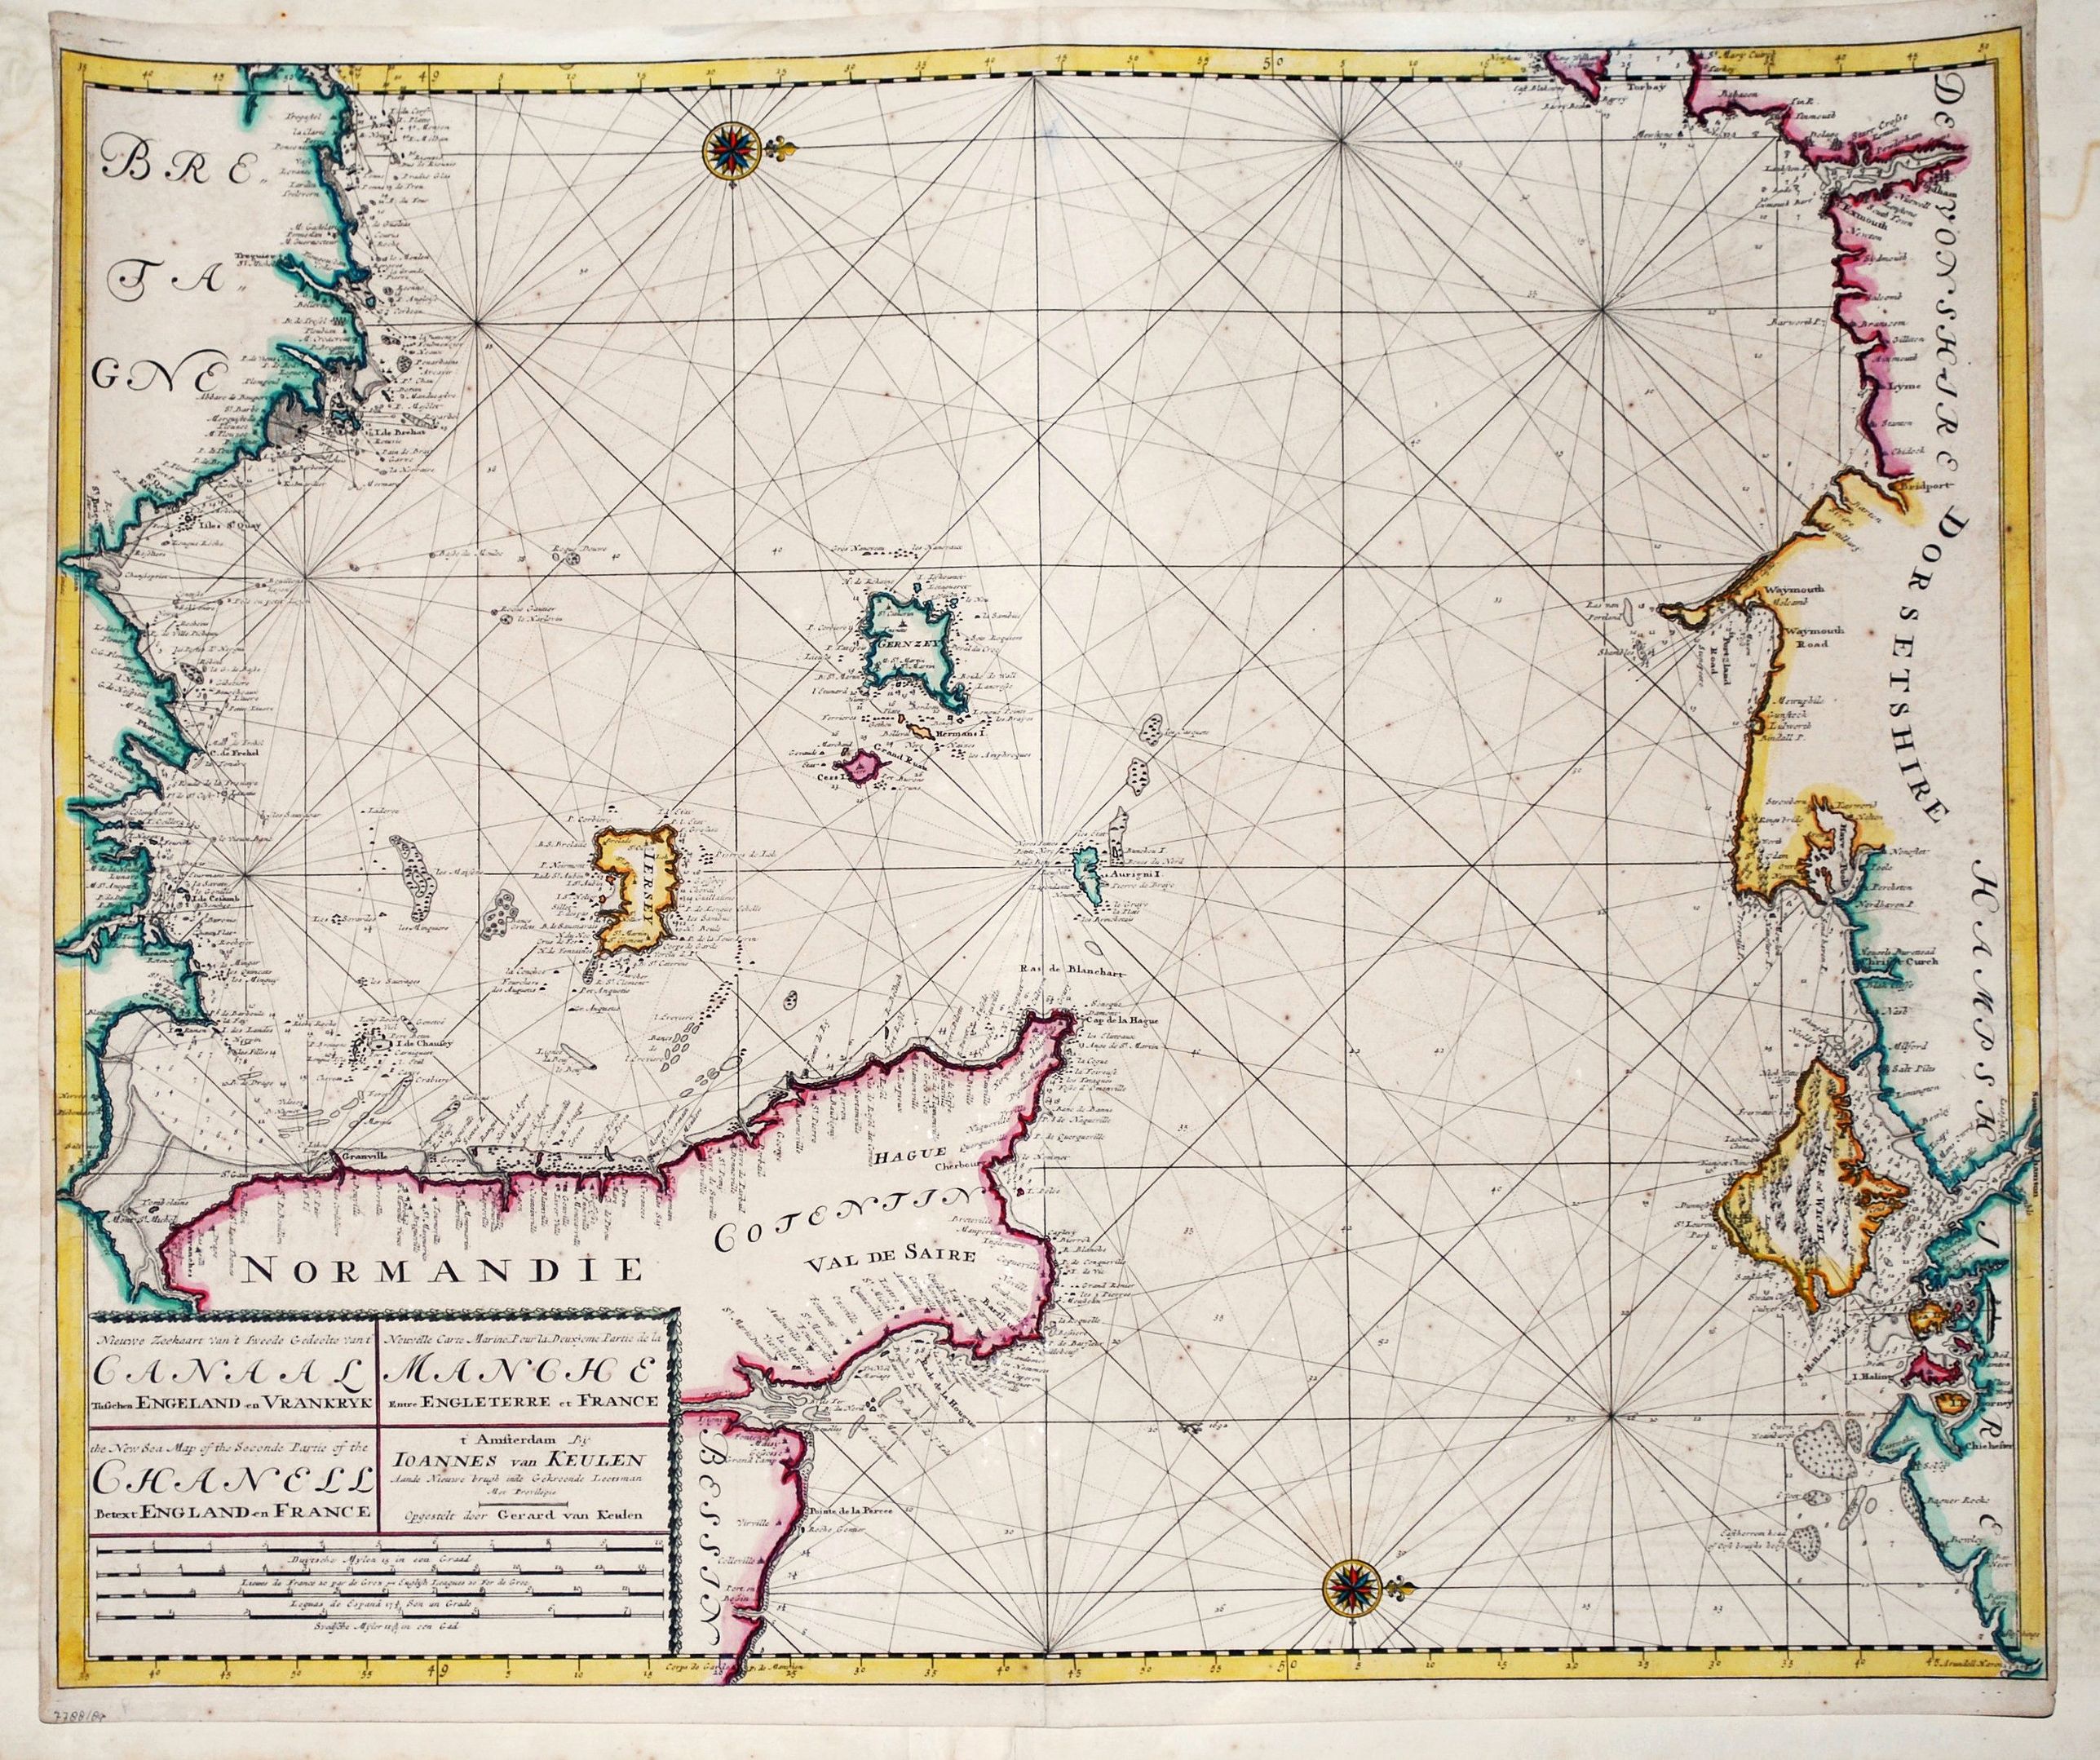 	Nieuwe Zeekaart van het Tweede gedeelte van het Canaal Tusschen Engeland en Vrankryk / ...Chanell betwext England and France